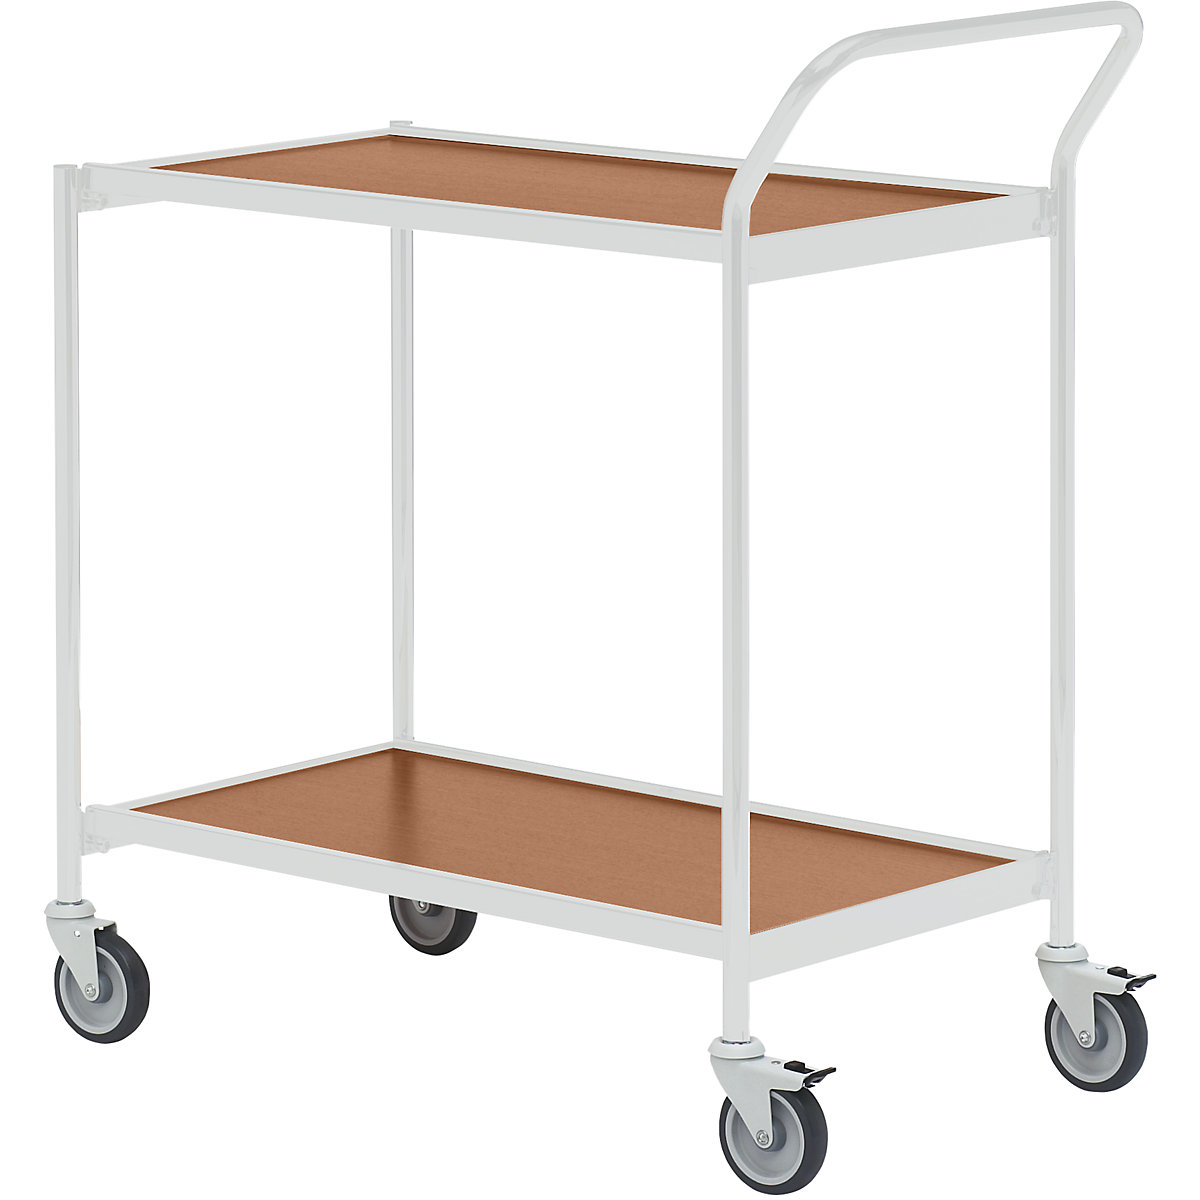 Stolový vozík – HelgeNyberg, 2 etáže, d x š 1000 x 420 mm, šedá / buk, od 5 ks-35